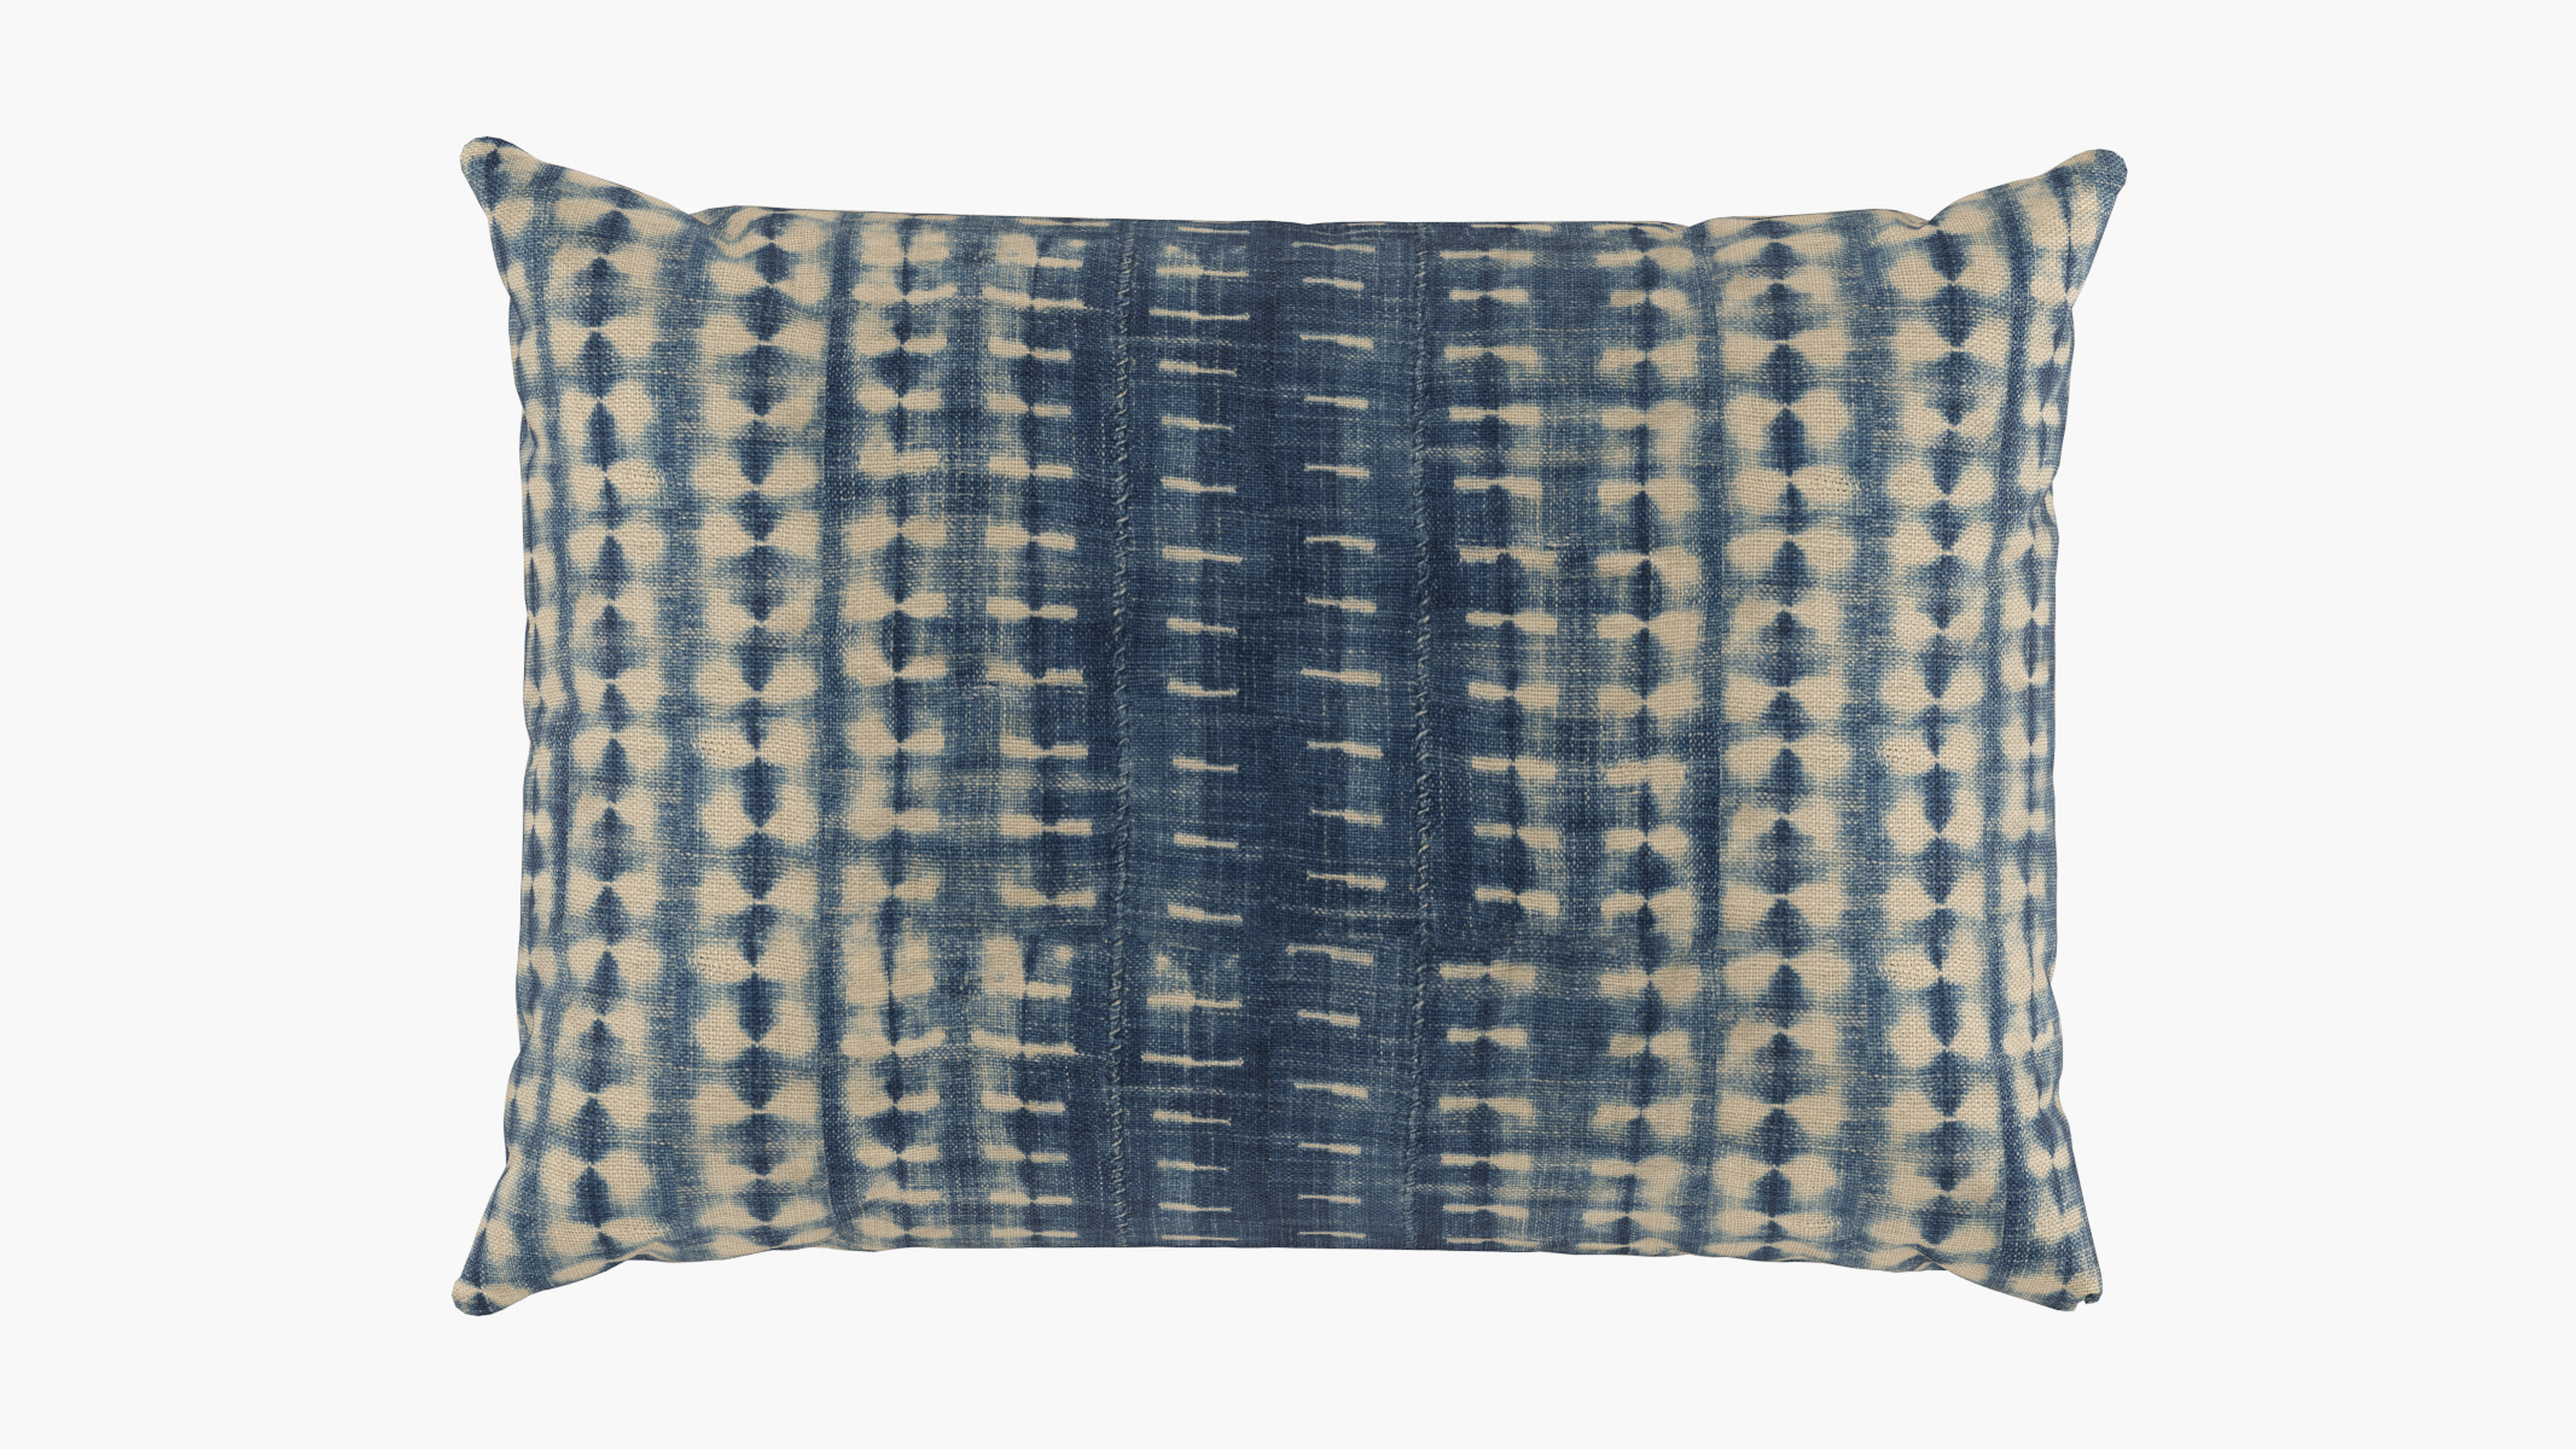 Outdoor Lumbar Pillow, Shibori, 14" x 20" - The Inside